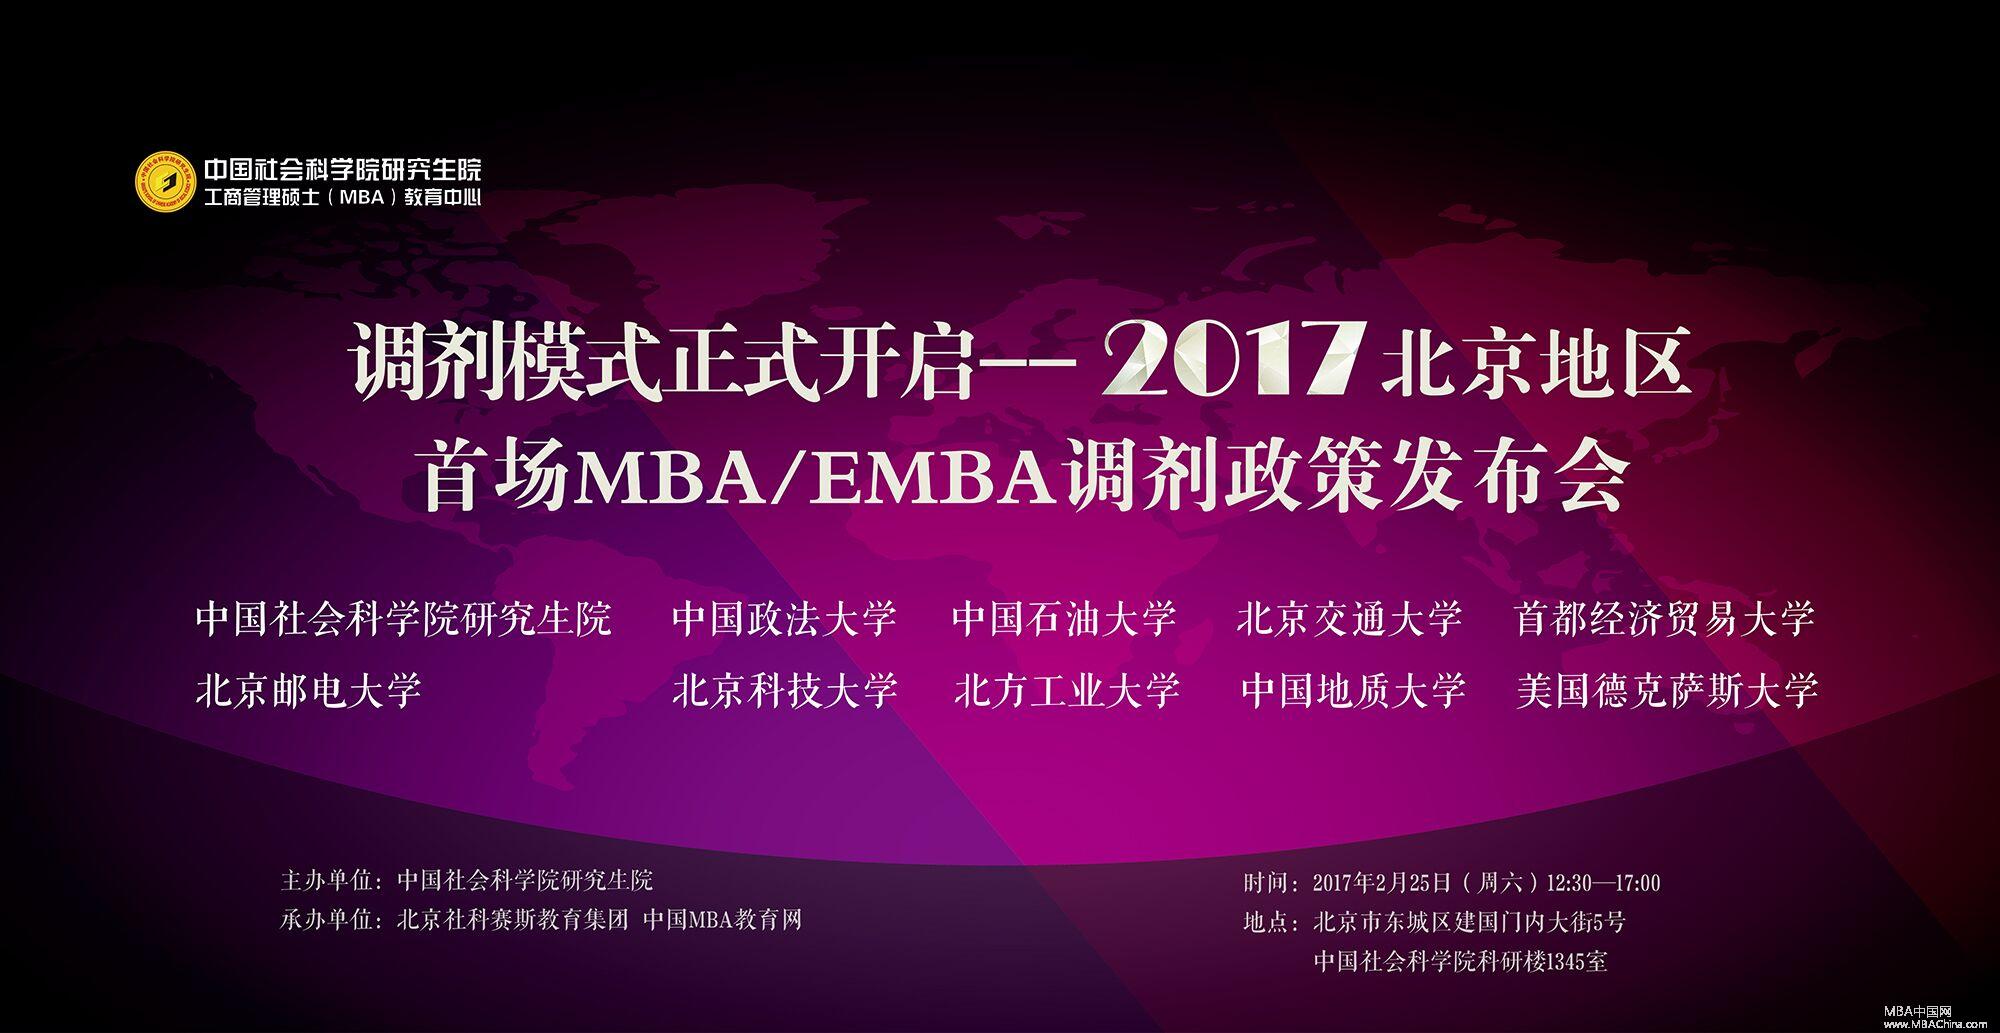 调剂模式正式开启——2017北京地区首场MBA/EMBA调剂政策发布会